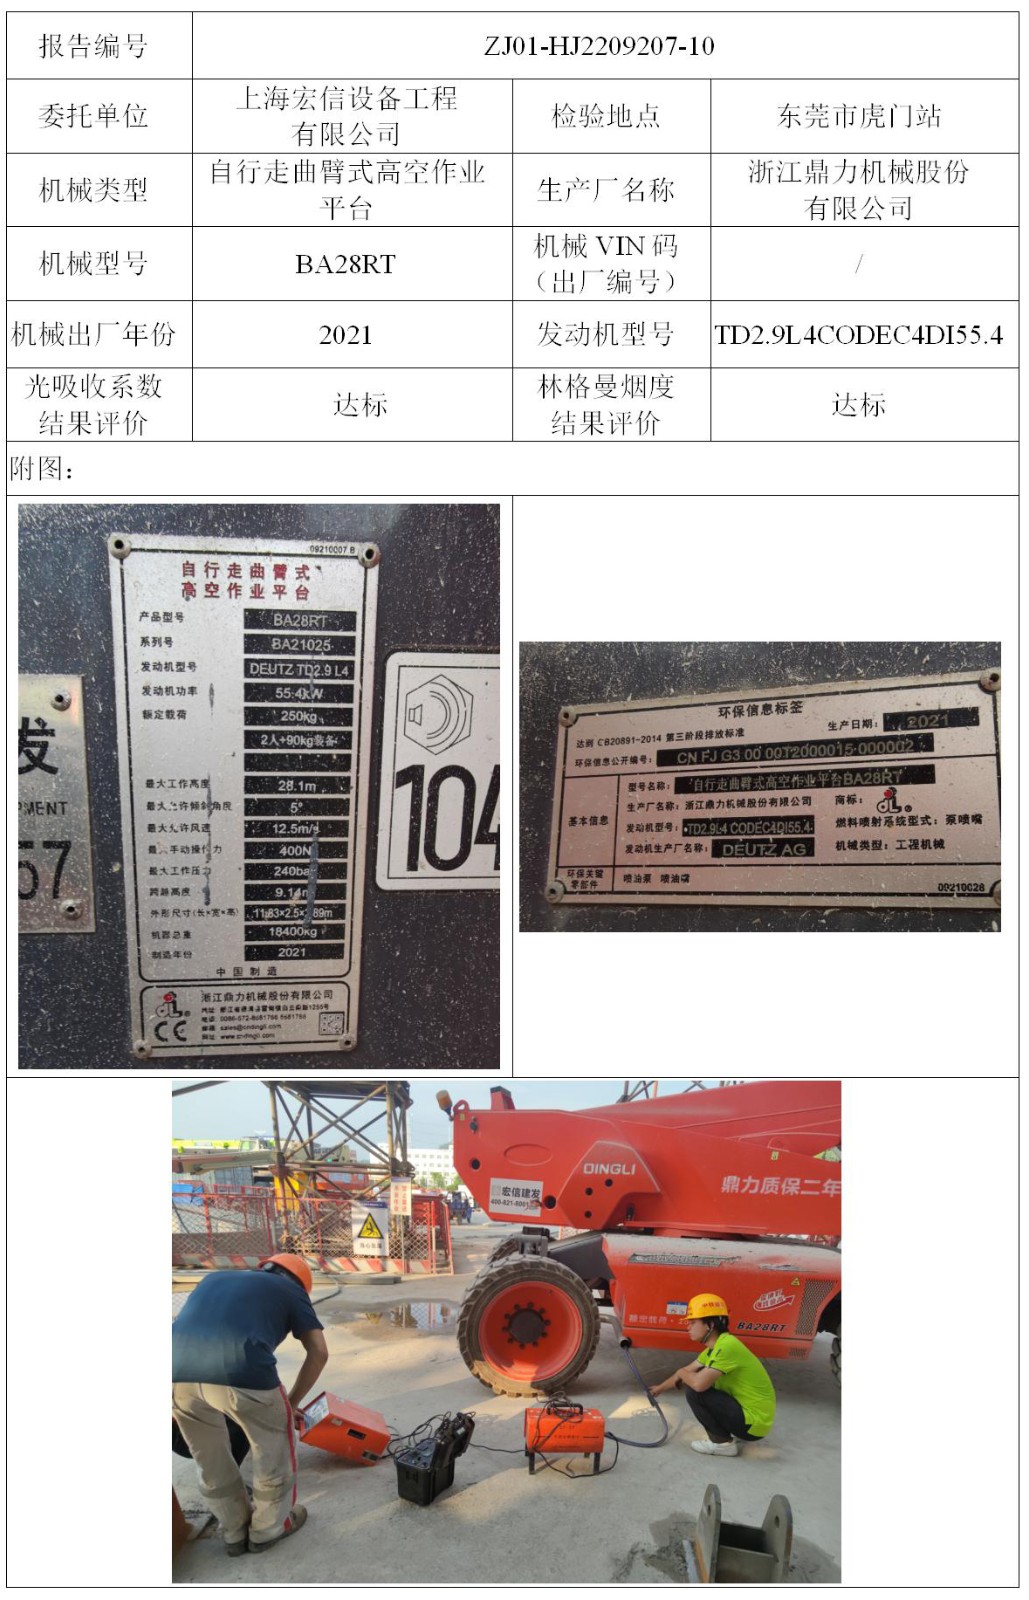 委托-ZJ01-HJ2209207-10上海宏信设备工程有限公司（叉车废气）二维码-张伟仪_01.jpg